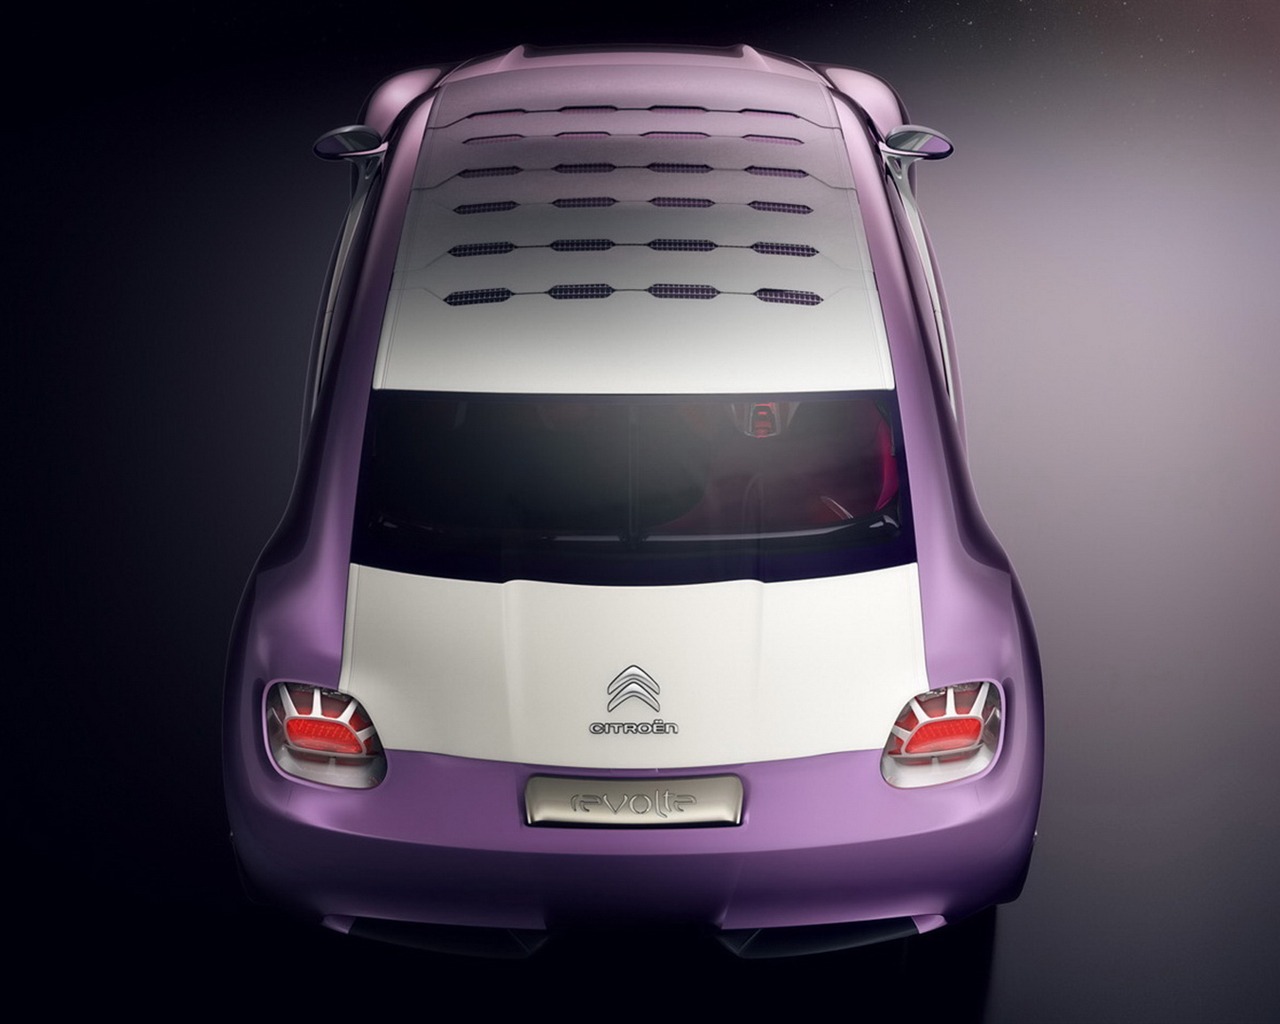 Revolte Citroen Concept Car Wallpaper #12 - 1280x1024